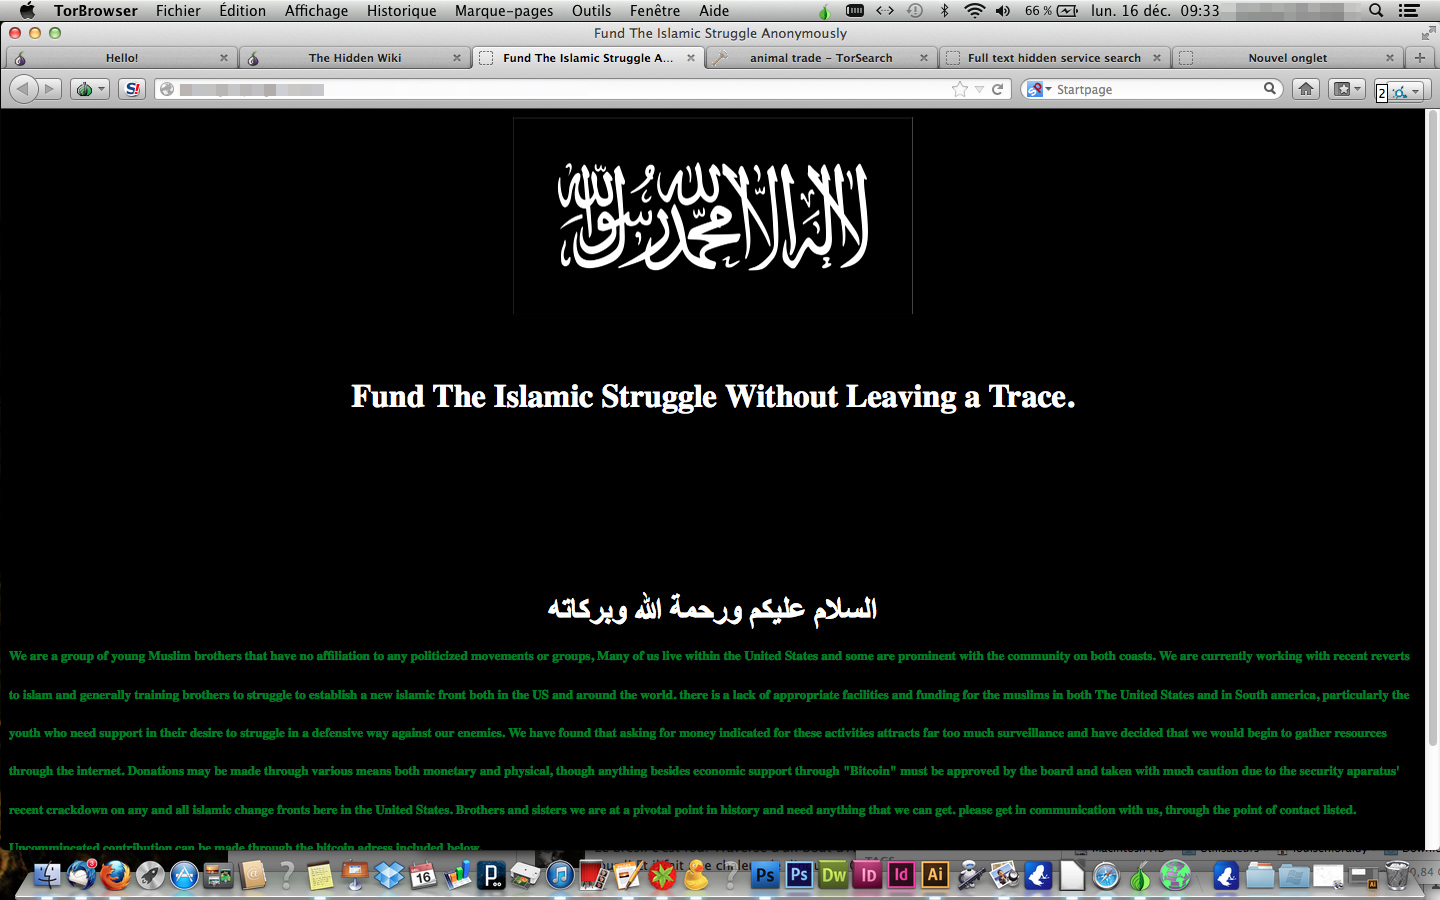 Screen capture of the DarkNet - Jihad 